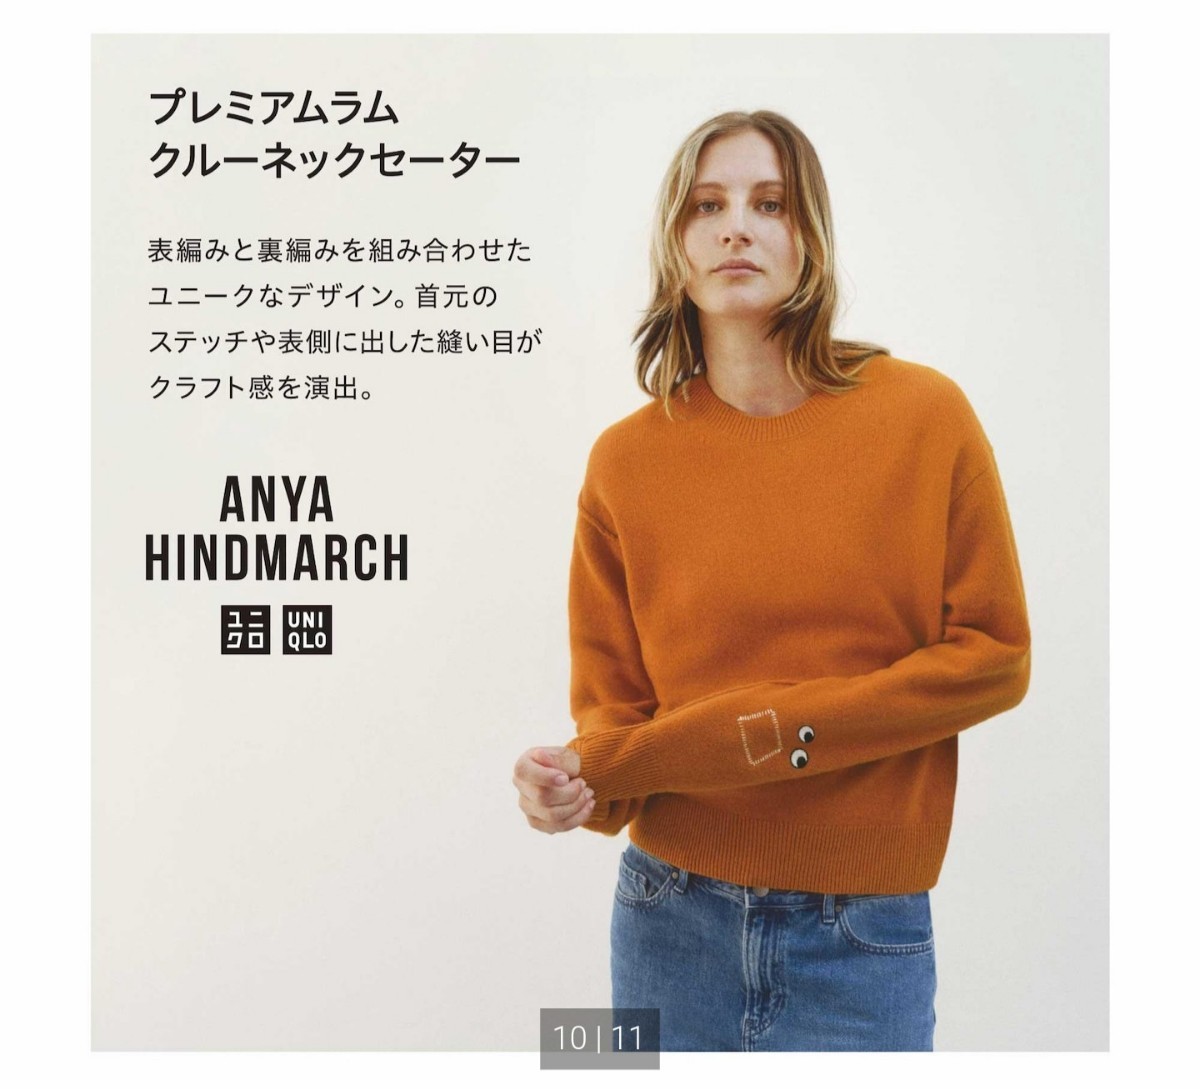  не использовался с биркой нераспечатанный * Uniqlo UNIQLO×ANYA HINDMARCH Anya Hindmarch premium Ram вырез лодочкой свитер orange 